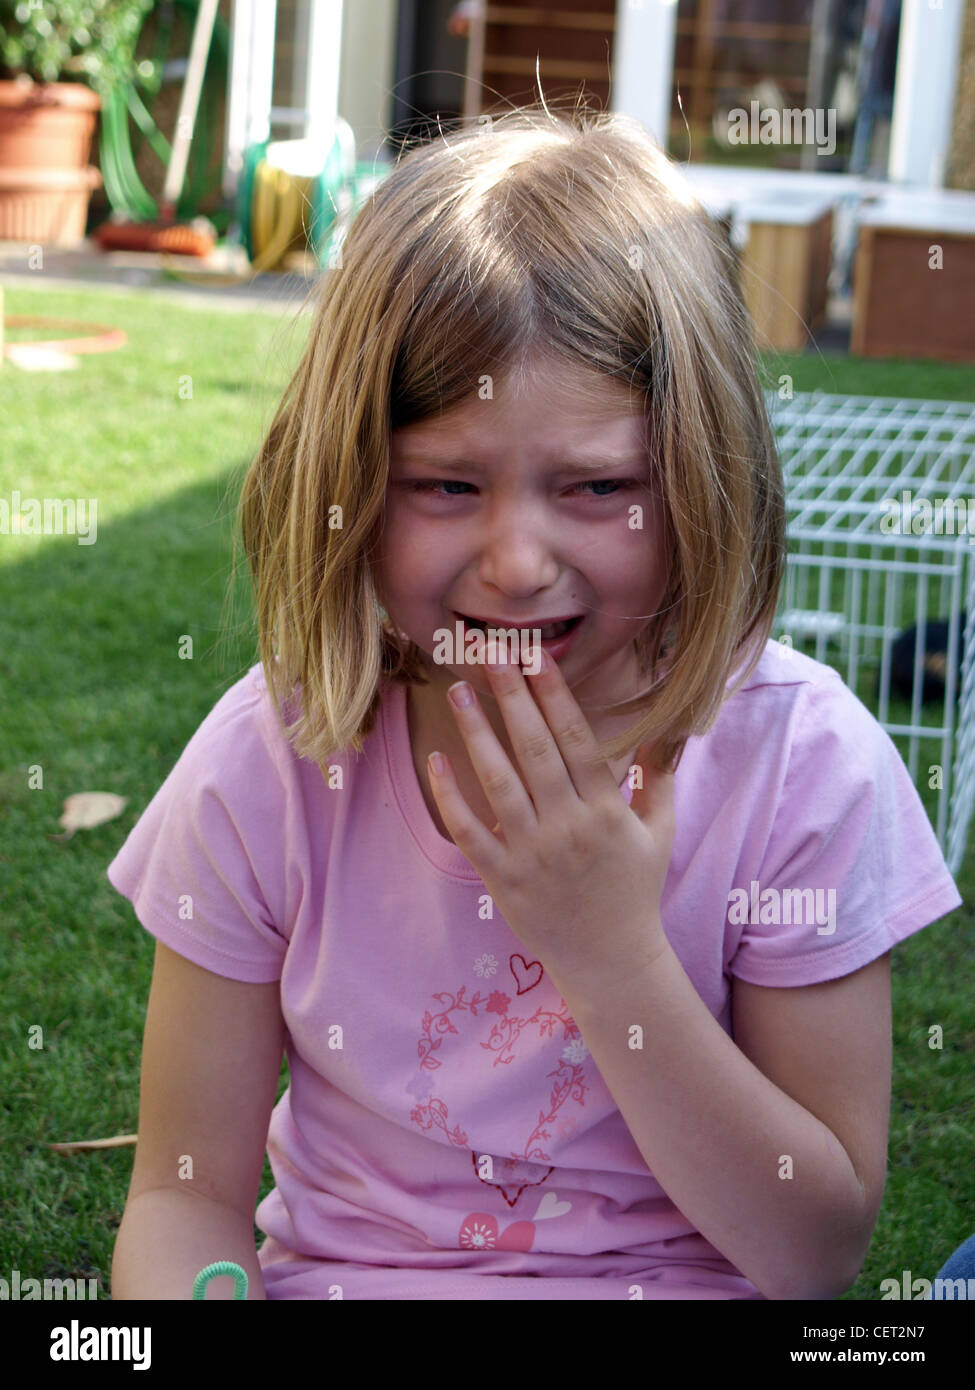 Weibliches Kind mit dunkel blondes schulterlanges Haar, trägt eine rosa  t-Shirt, Weinen Stockfotografie - Alamy